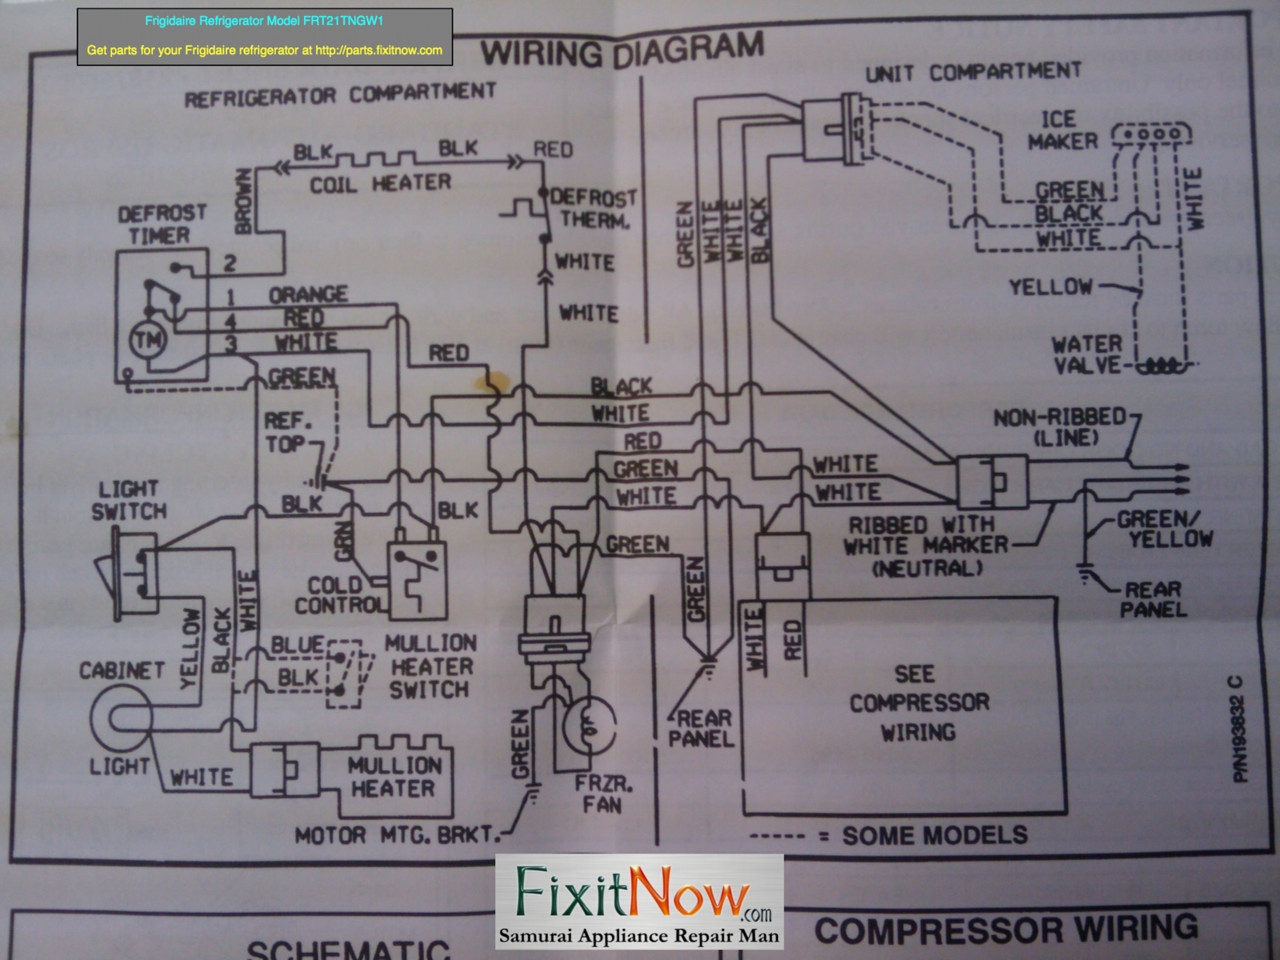 Fitech Wiring Diagram | Autowiringdiagram - Fitech Wiring Diagram